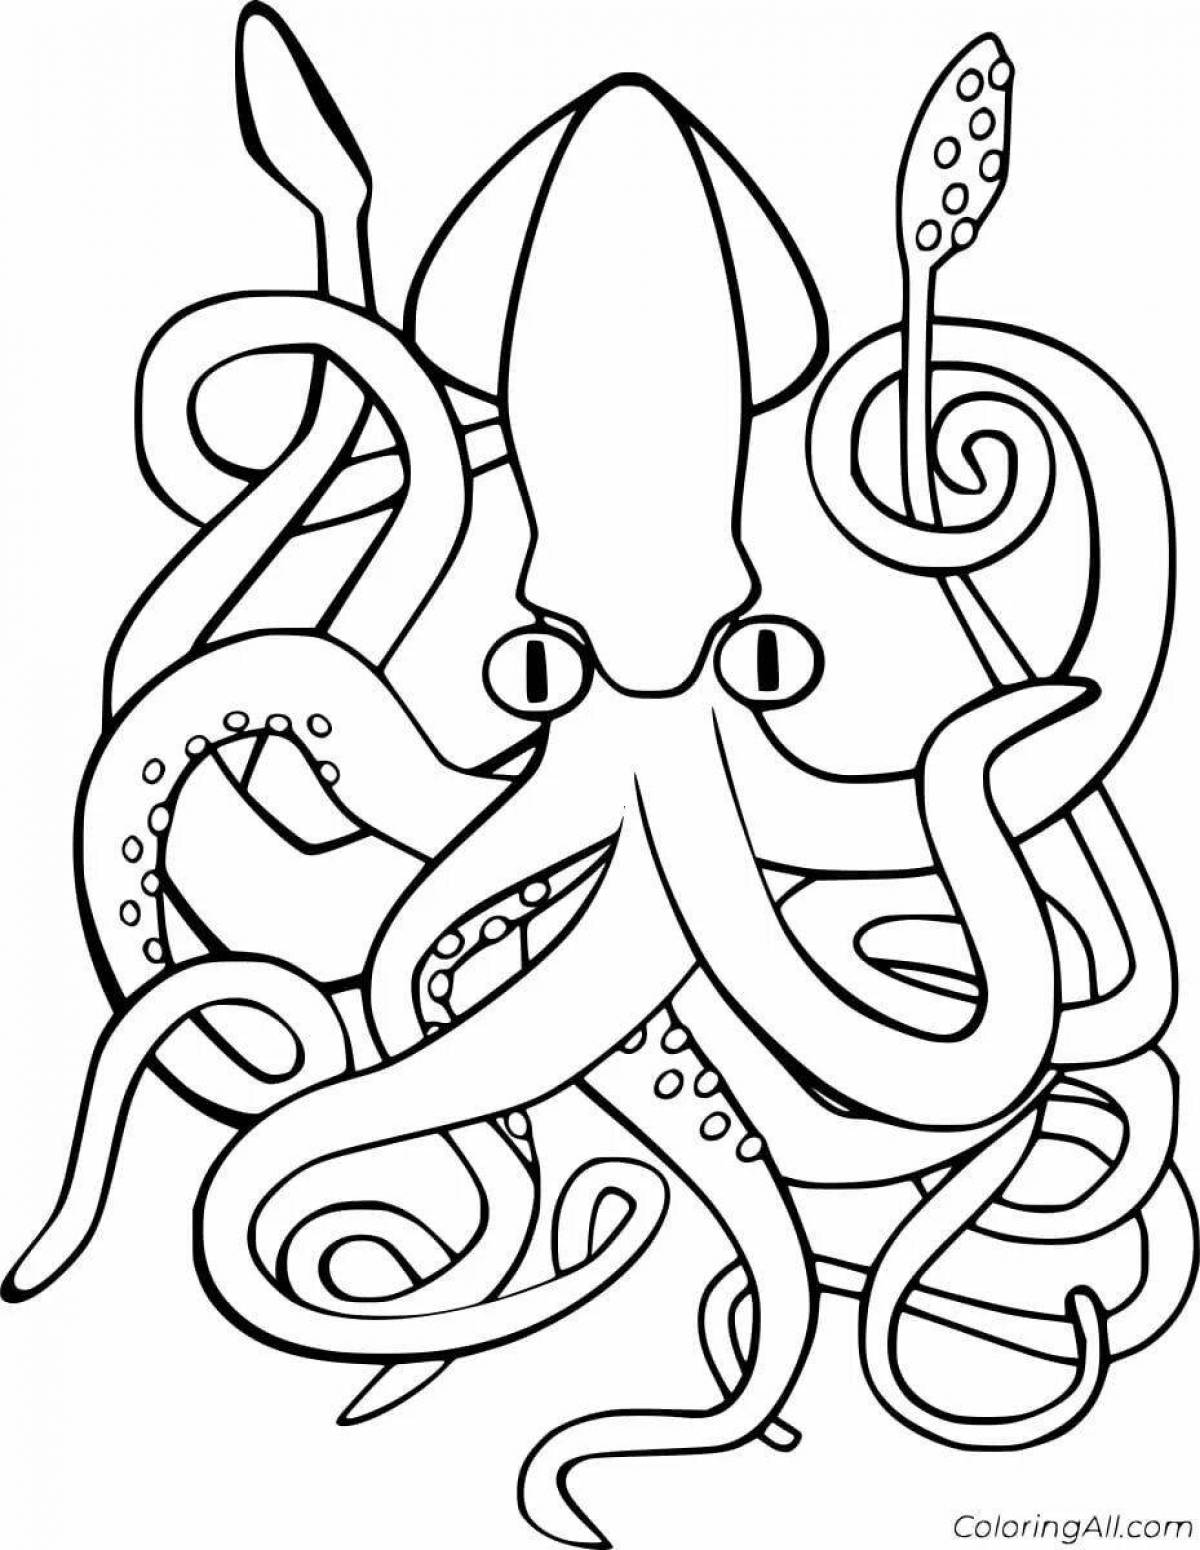 Generous coloring giant squid